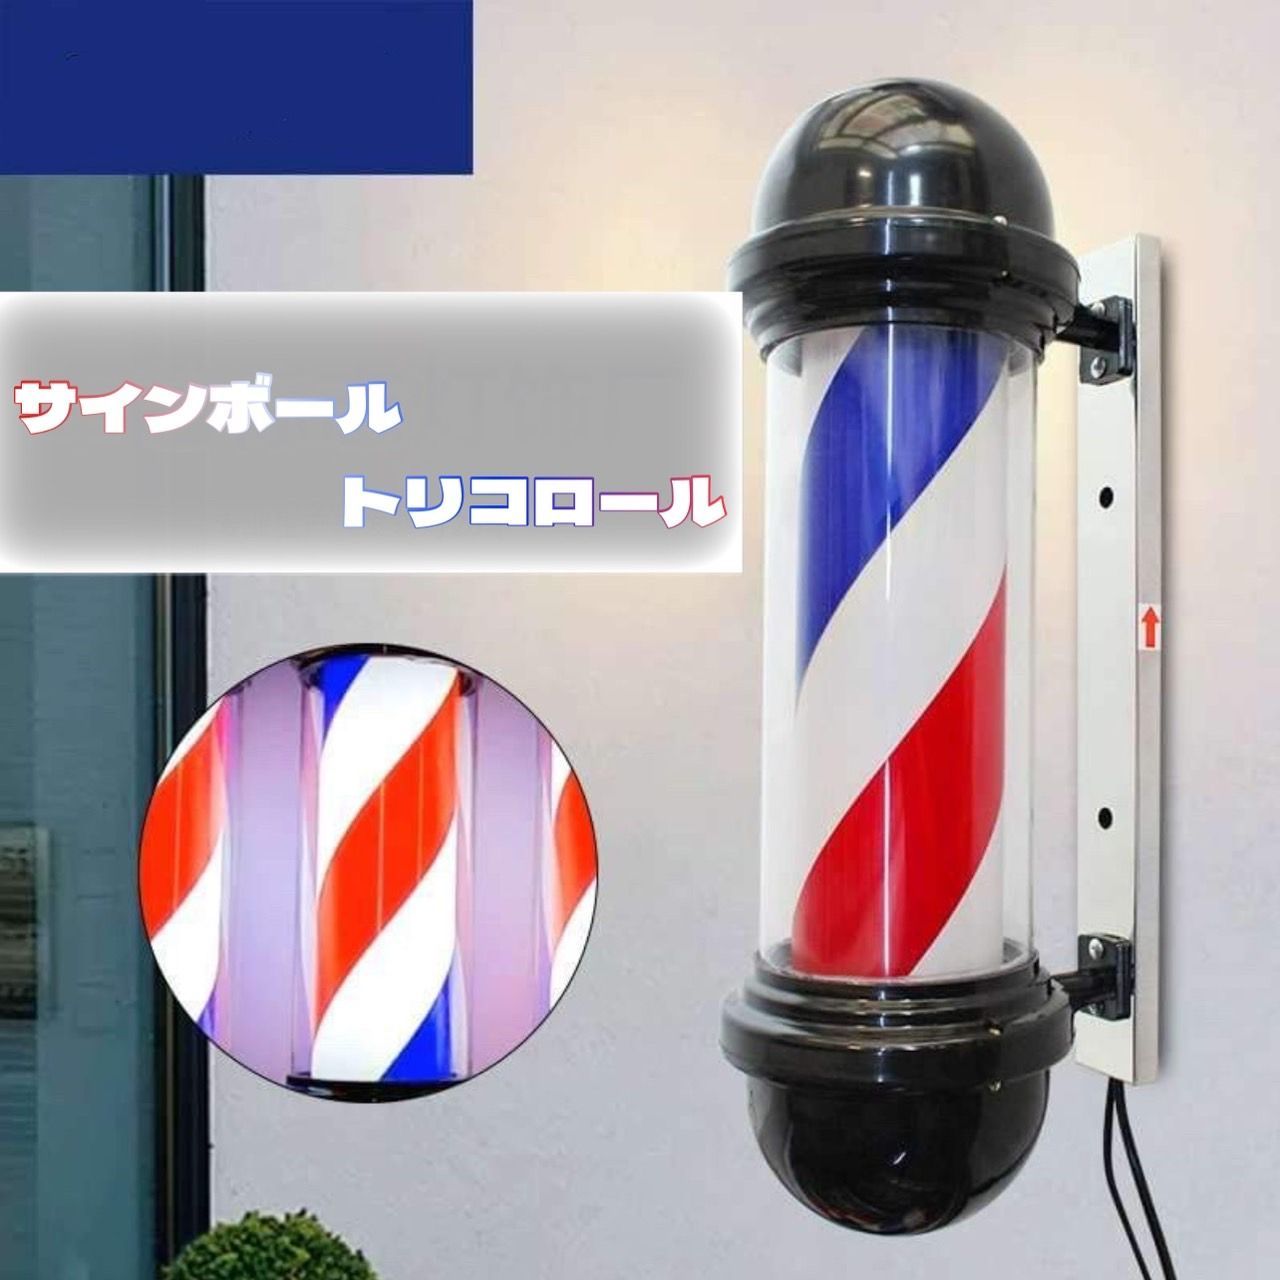 💈サインボール(トリコロール)💈理髪店barber看板💈 3色カラー💈 回転 ...